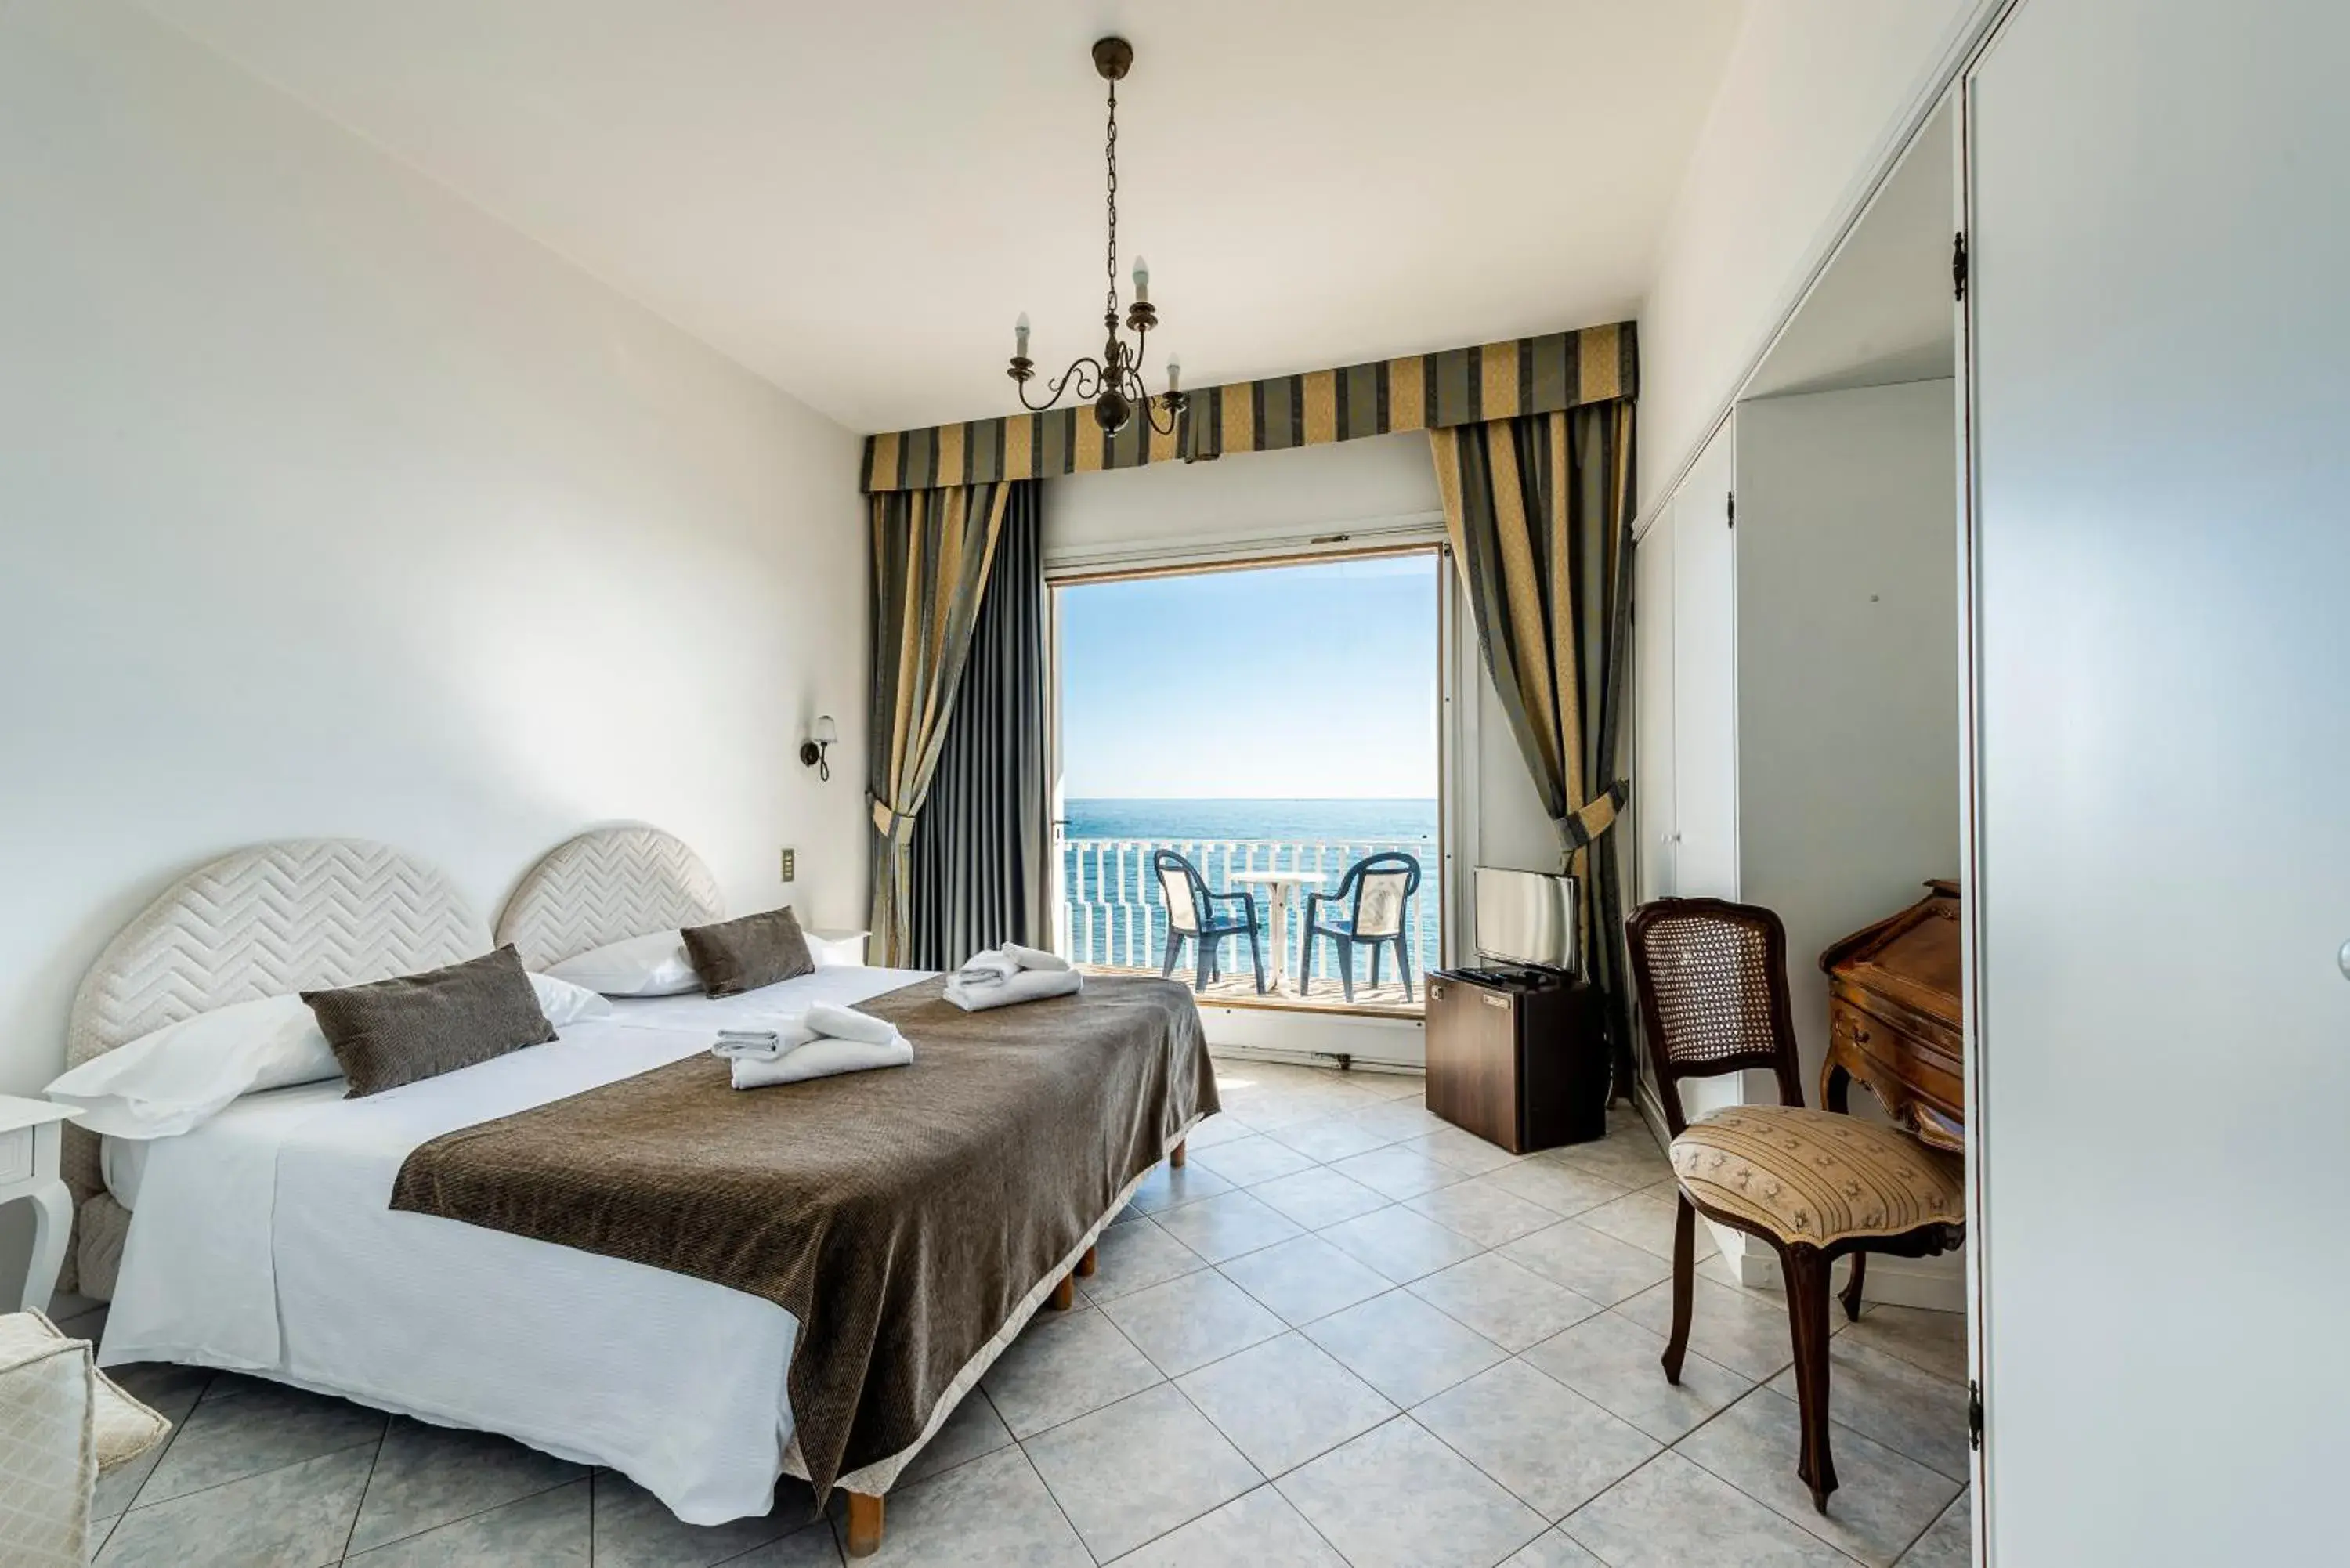 Sea View in Hotel Ristorante Maga Circe